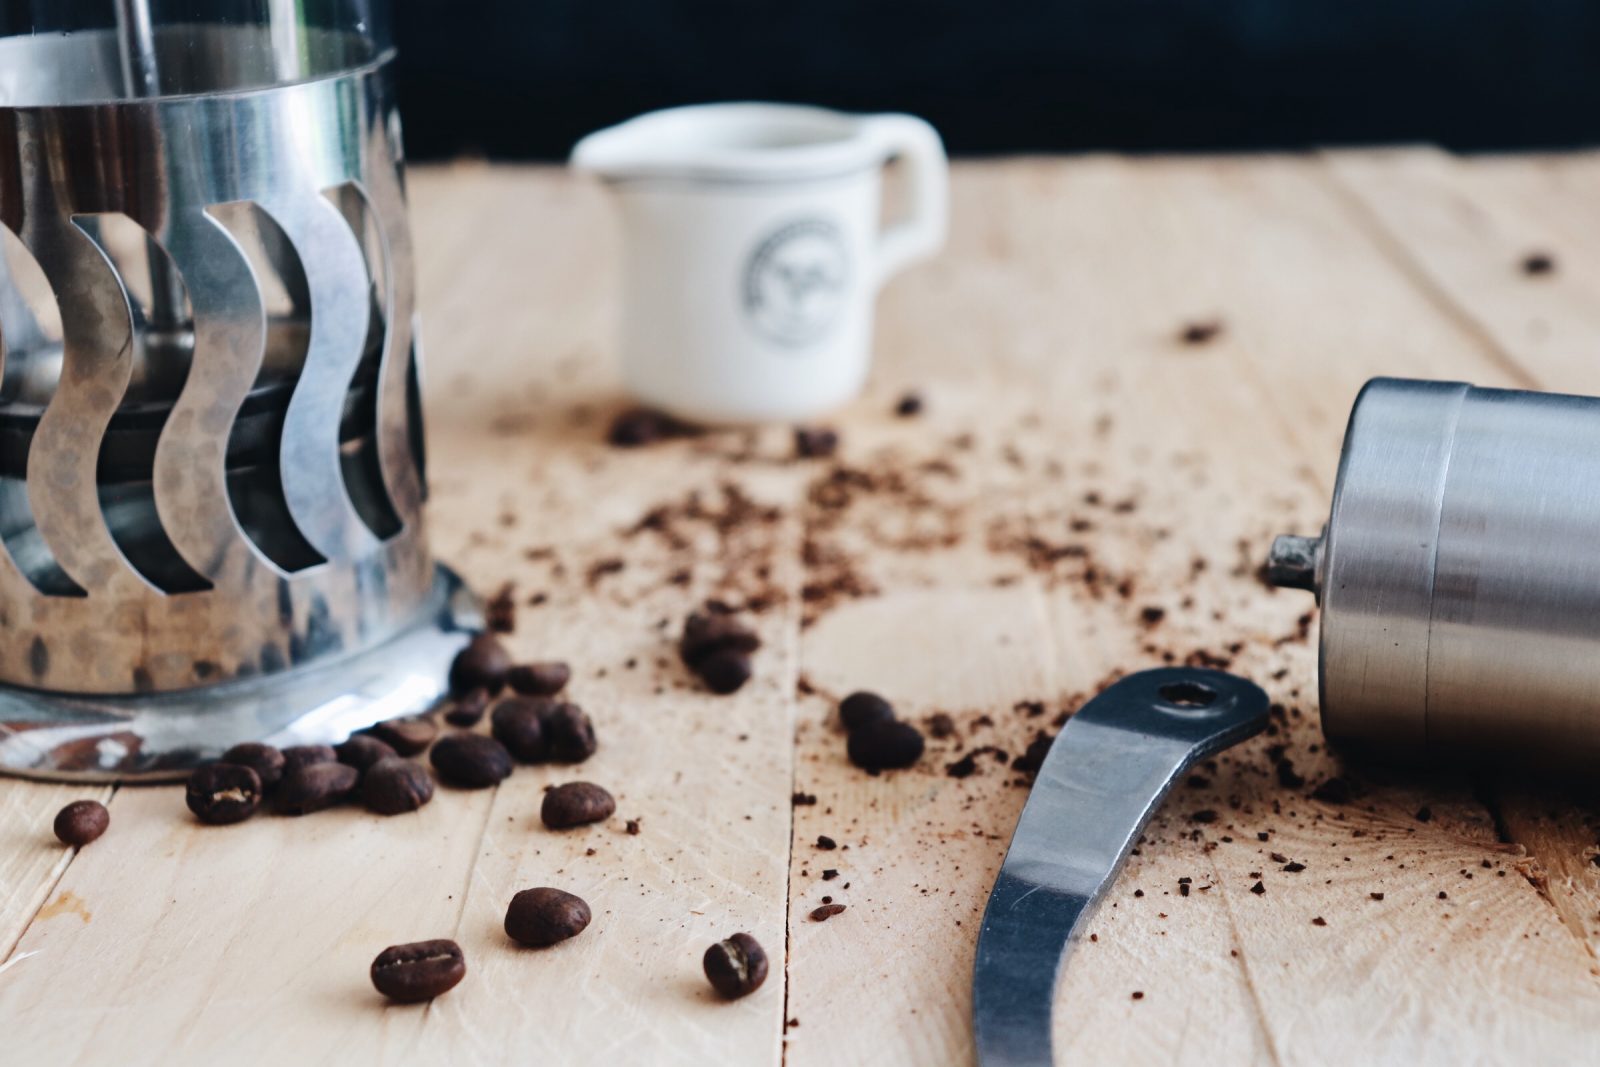 manfaat-dan-efek-samping-mengkonsumsi-kopi-hitam-tanpa-gula-setiap-hari-coffeeland